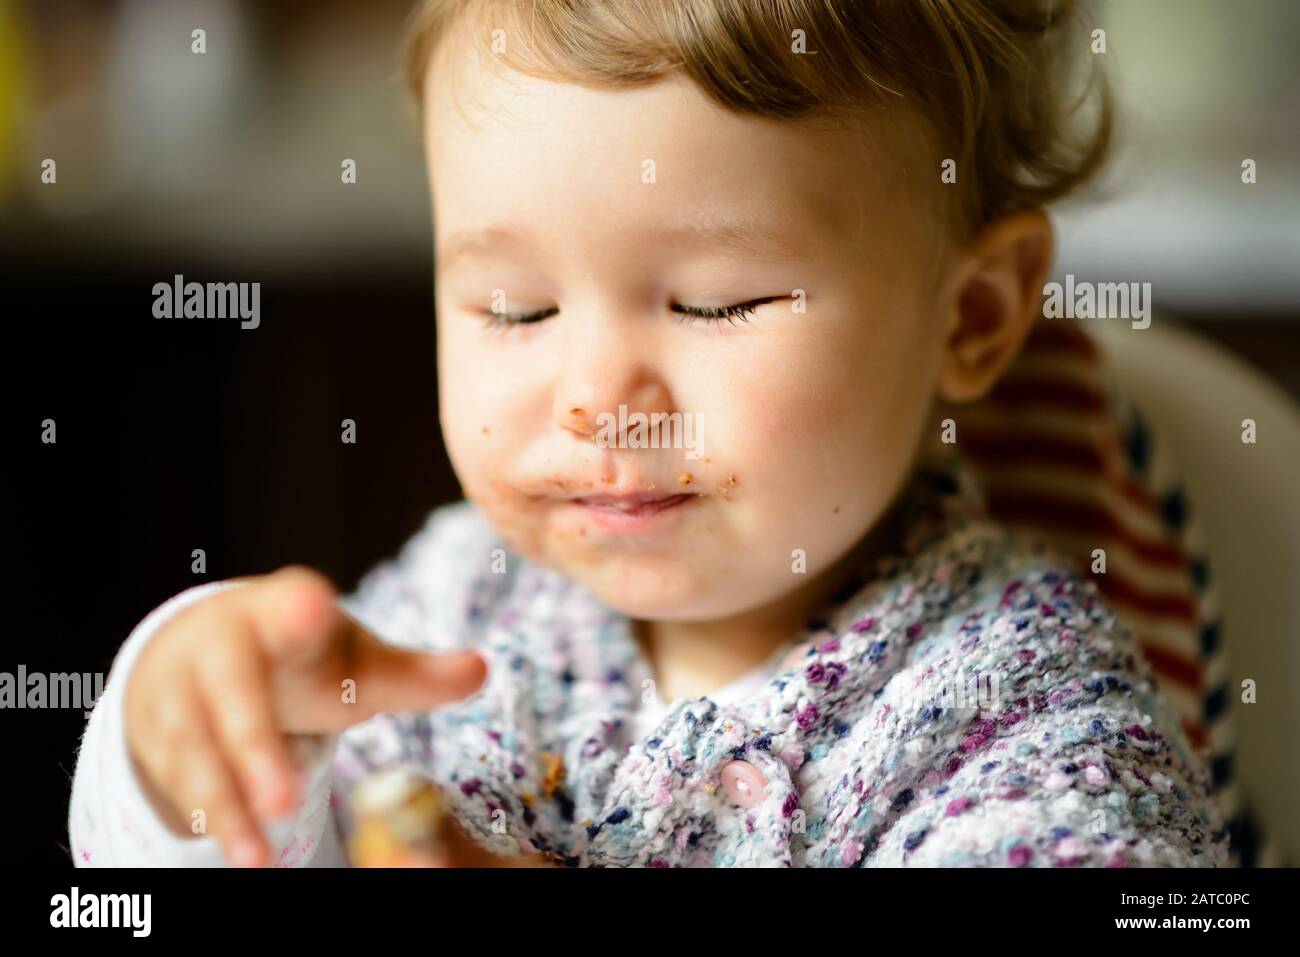 Fröhliches Baby-Mädchen mit unordlichem Gesicht essen. Das einjährige Kind isst und lächelt mit geschlossenen Augen. Stockfoto